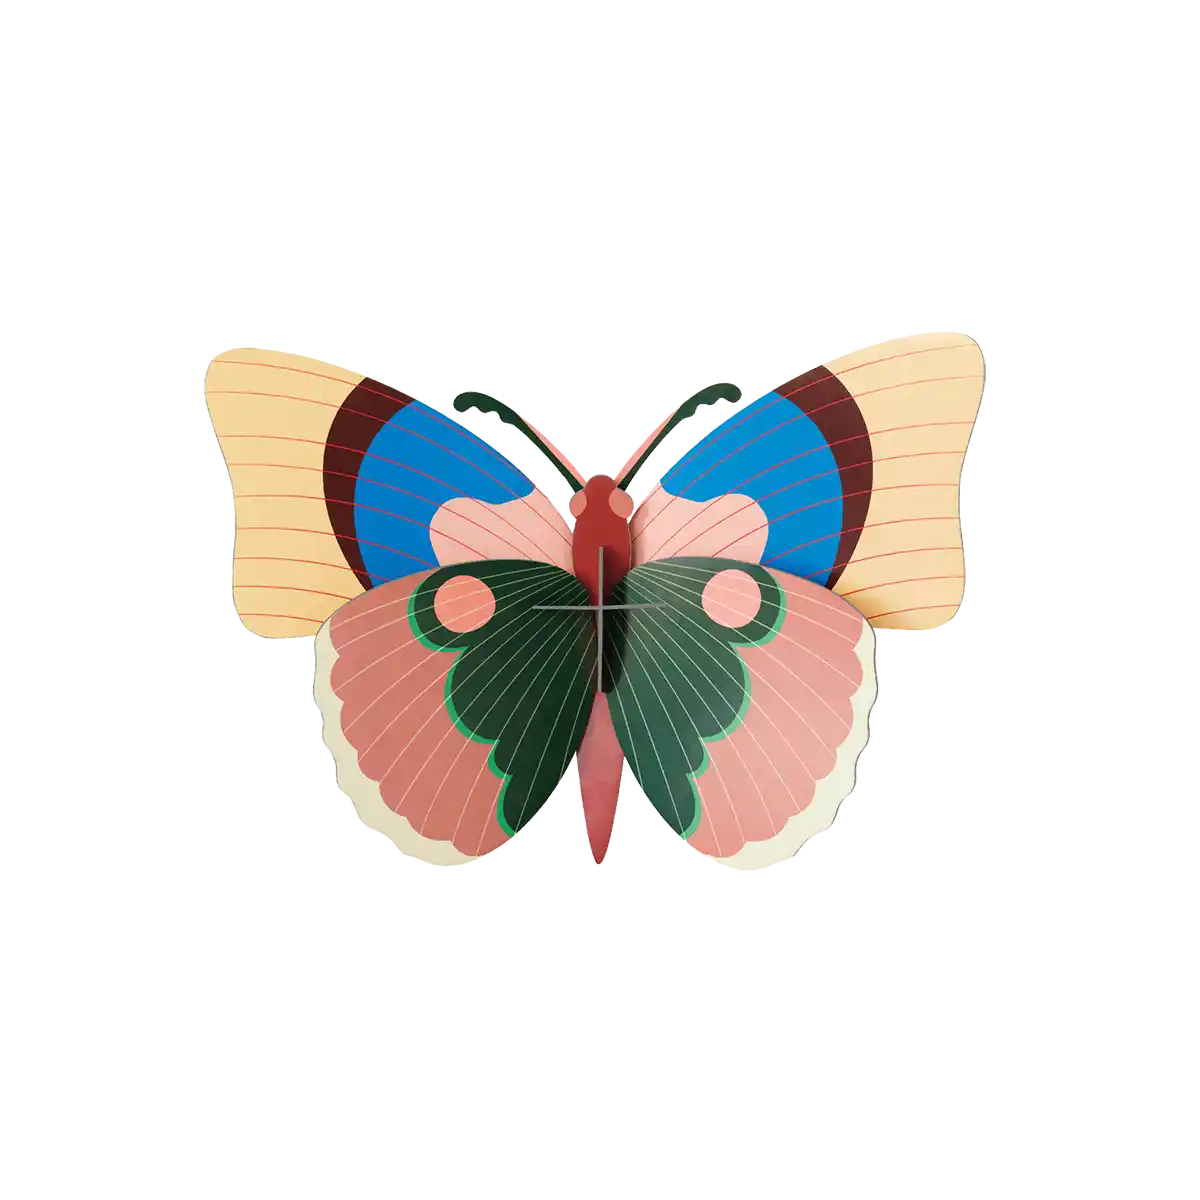 Cepora Butterfly / 3D Objekt / Wanddekoration